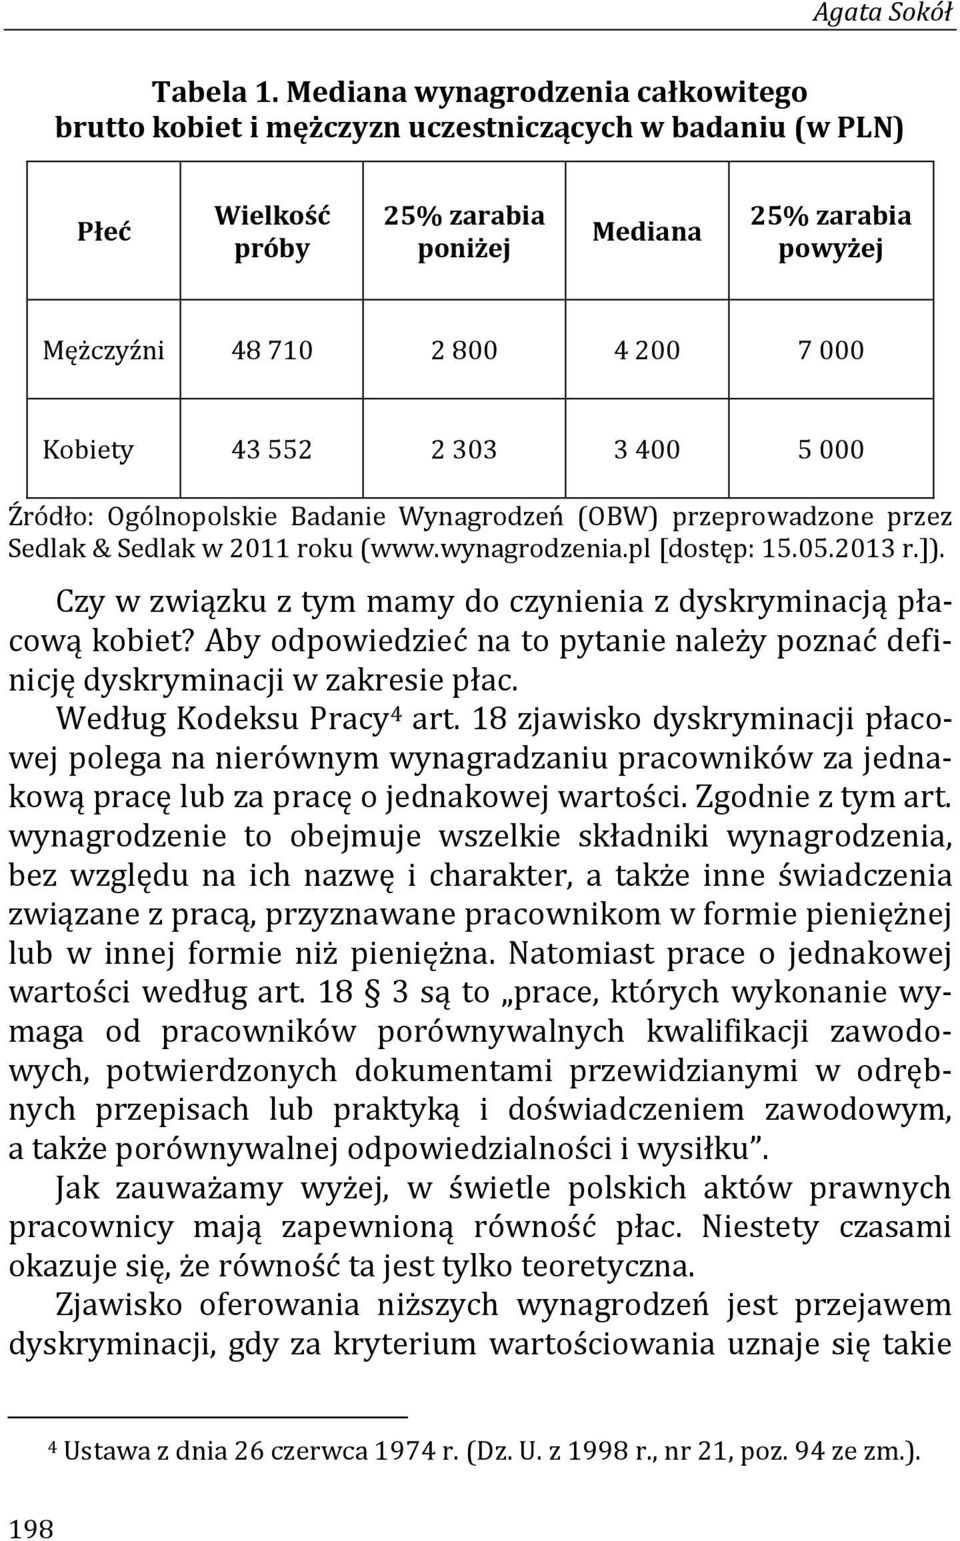 Kobiety 43 552 2 303 3 400 5 000 Źródło: Ogólnopolskie Badanie Wynagrodzeń (OBW) przeprowadzone przez Sedlak & Sedlak w 2011 roku (www.wynagrodzenia.pl [dostęp: 15.05.2013 r.]).